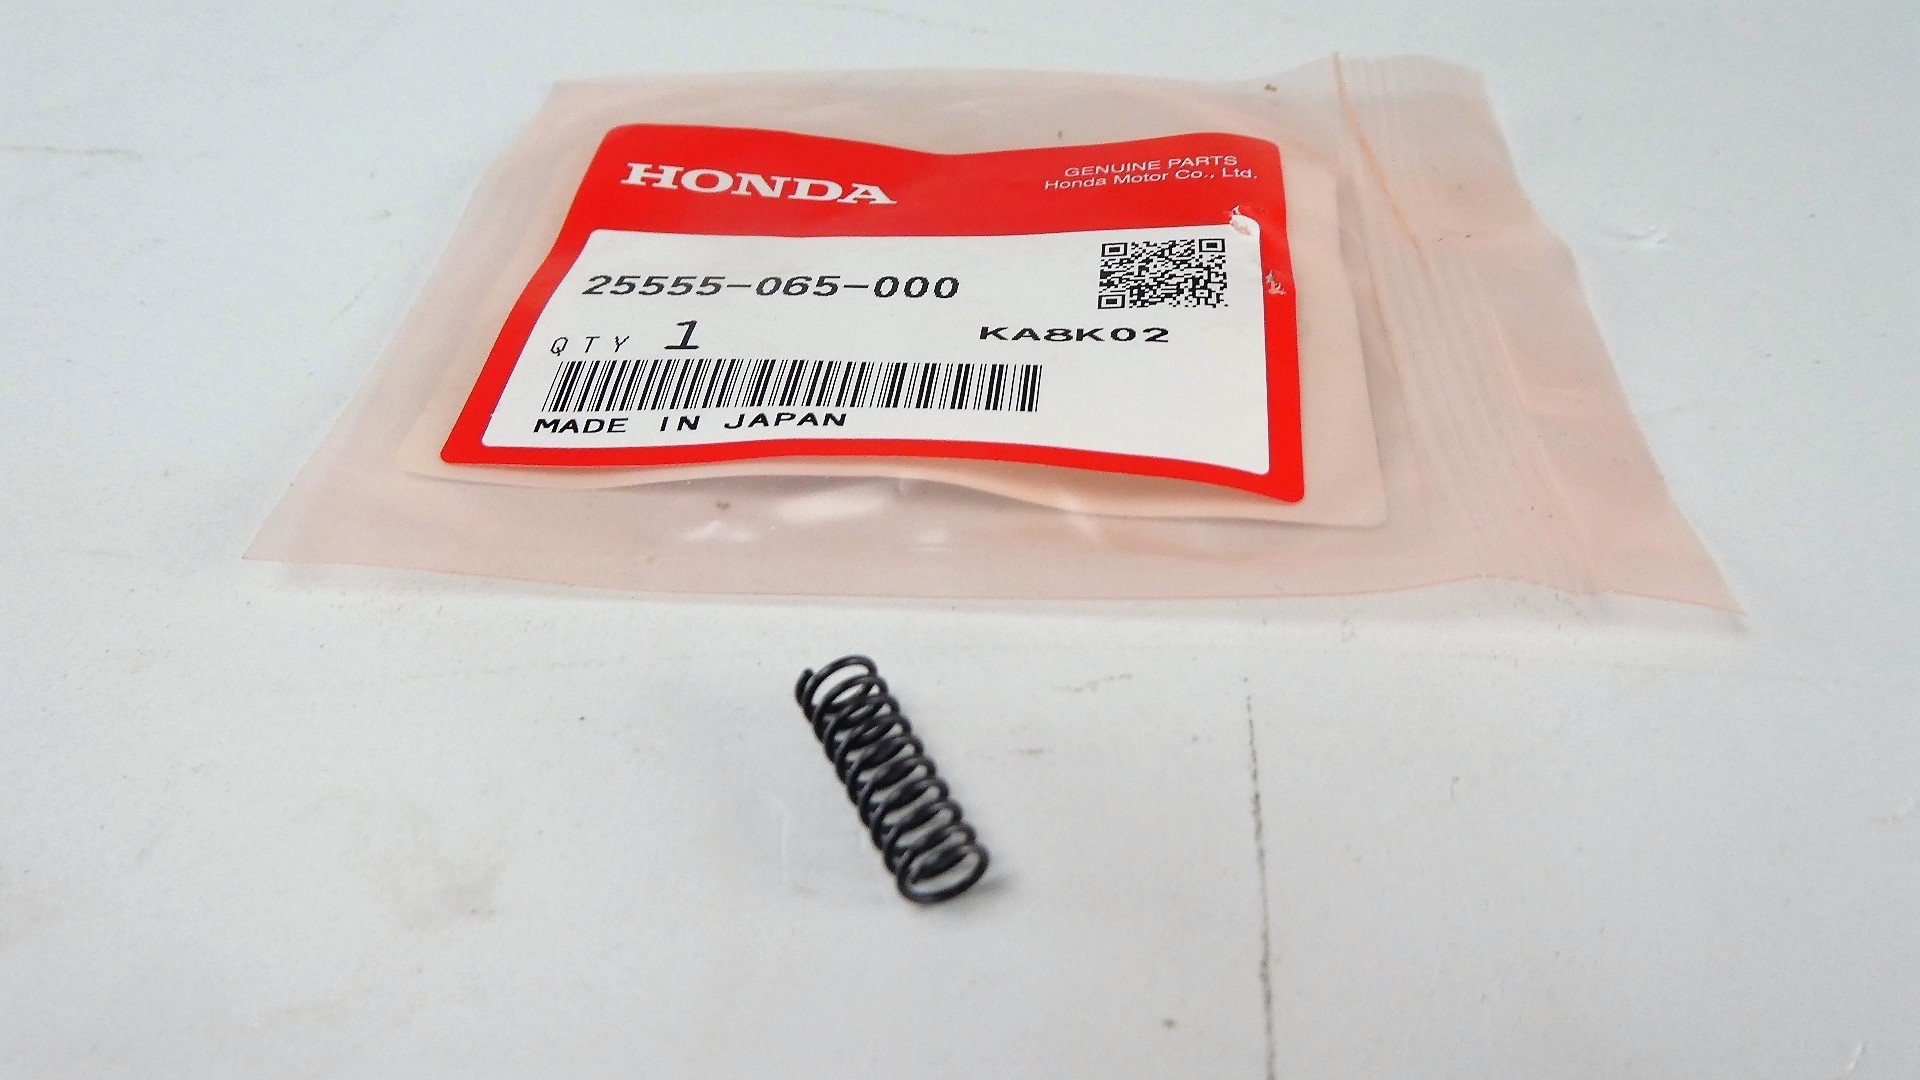 Motorgehäuse Rechts Kupplungsdeckel für Honda Dax Monkey u.a Halbautomatik